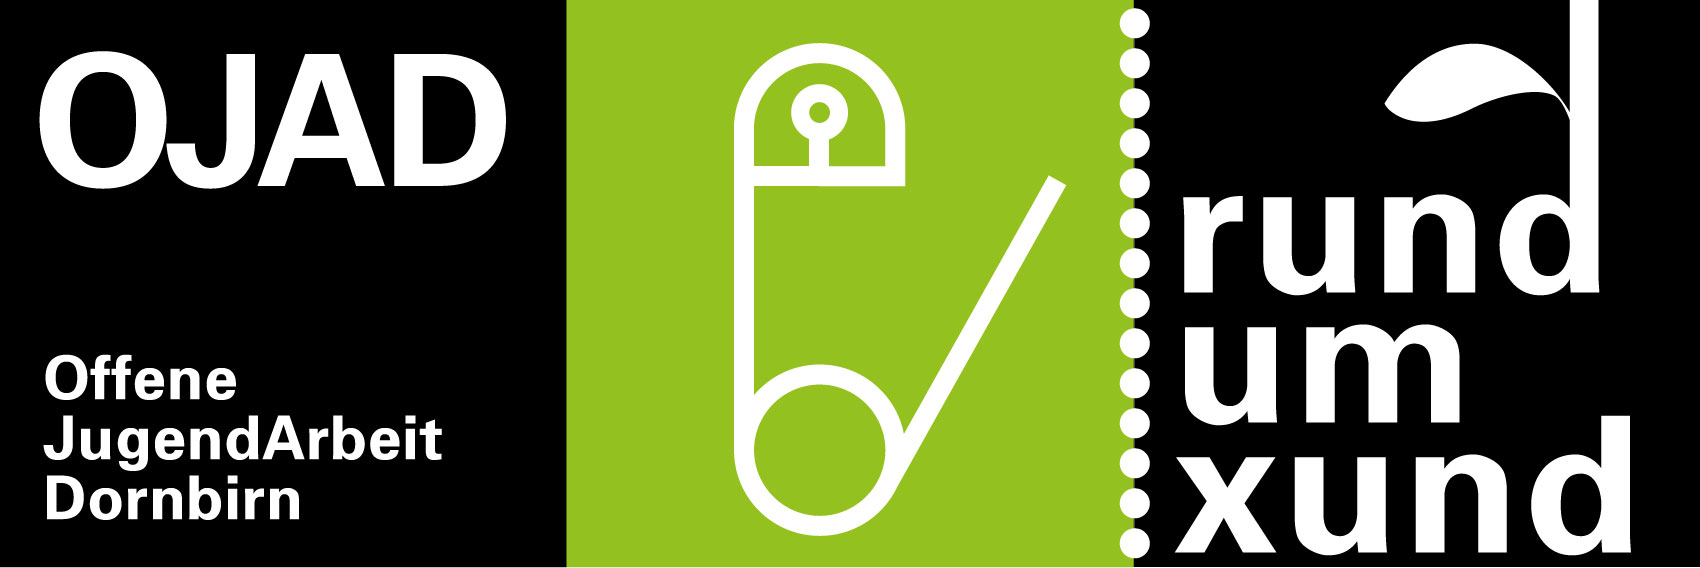 OJAD-Logo-rundumxund-gruen